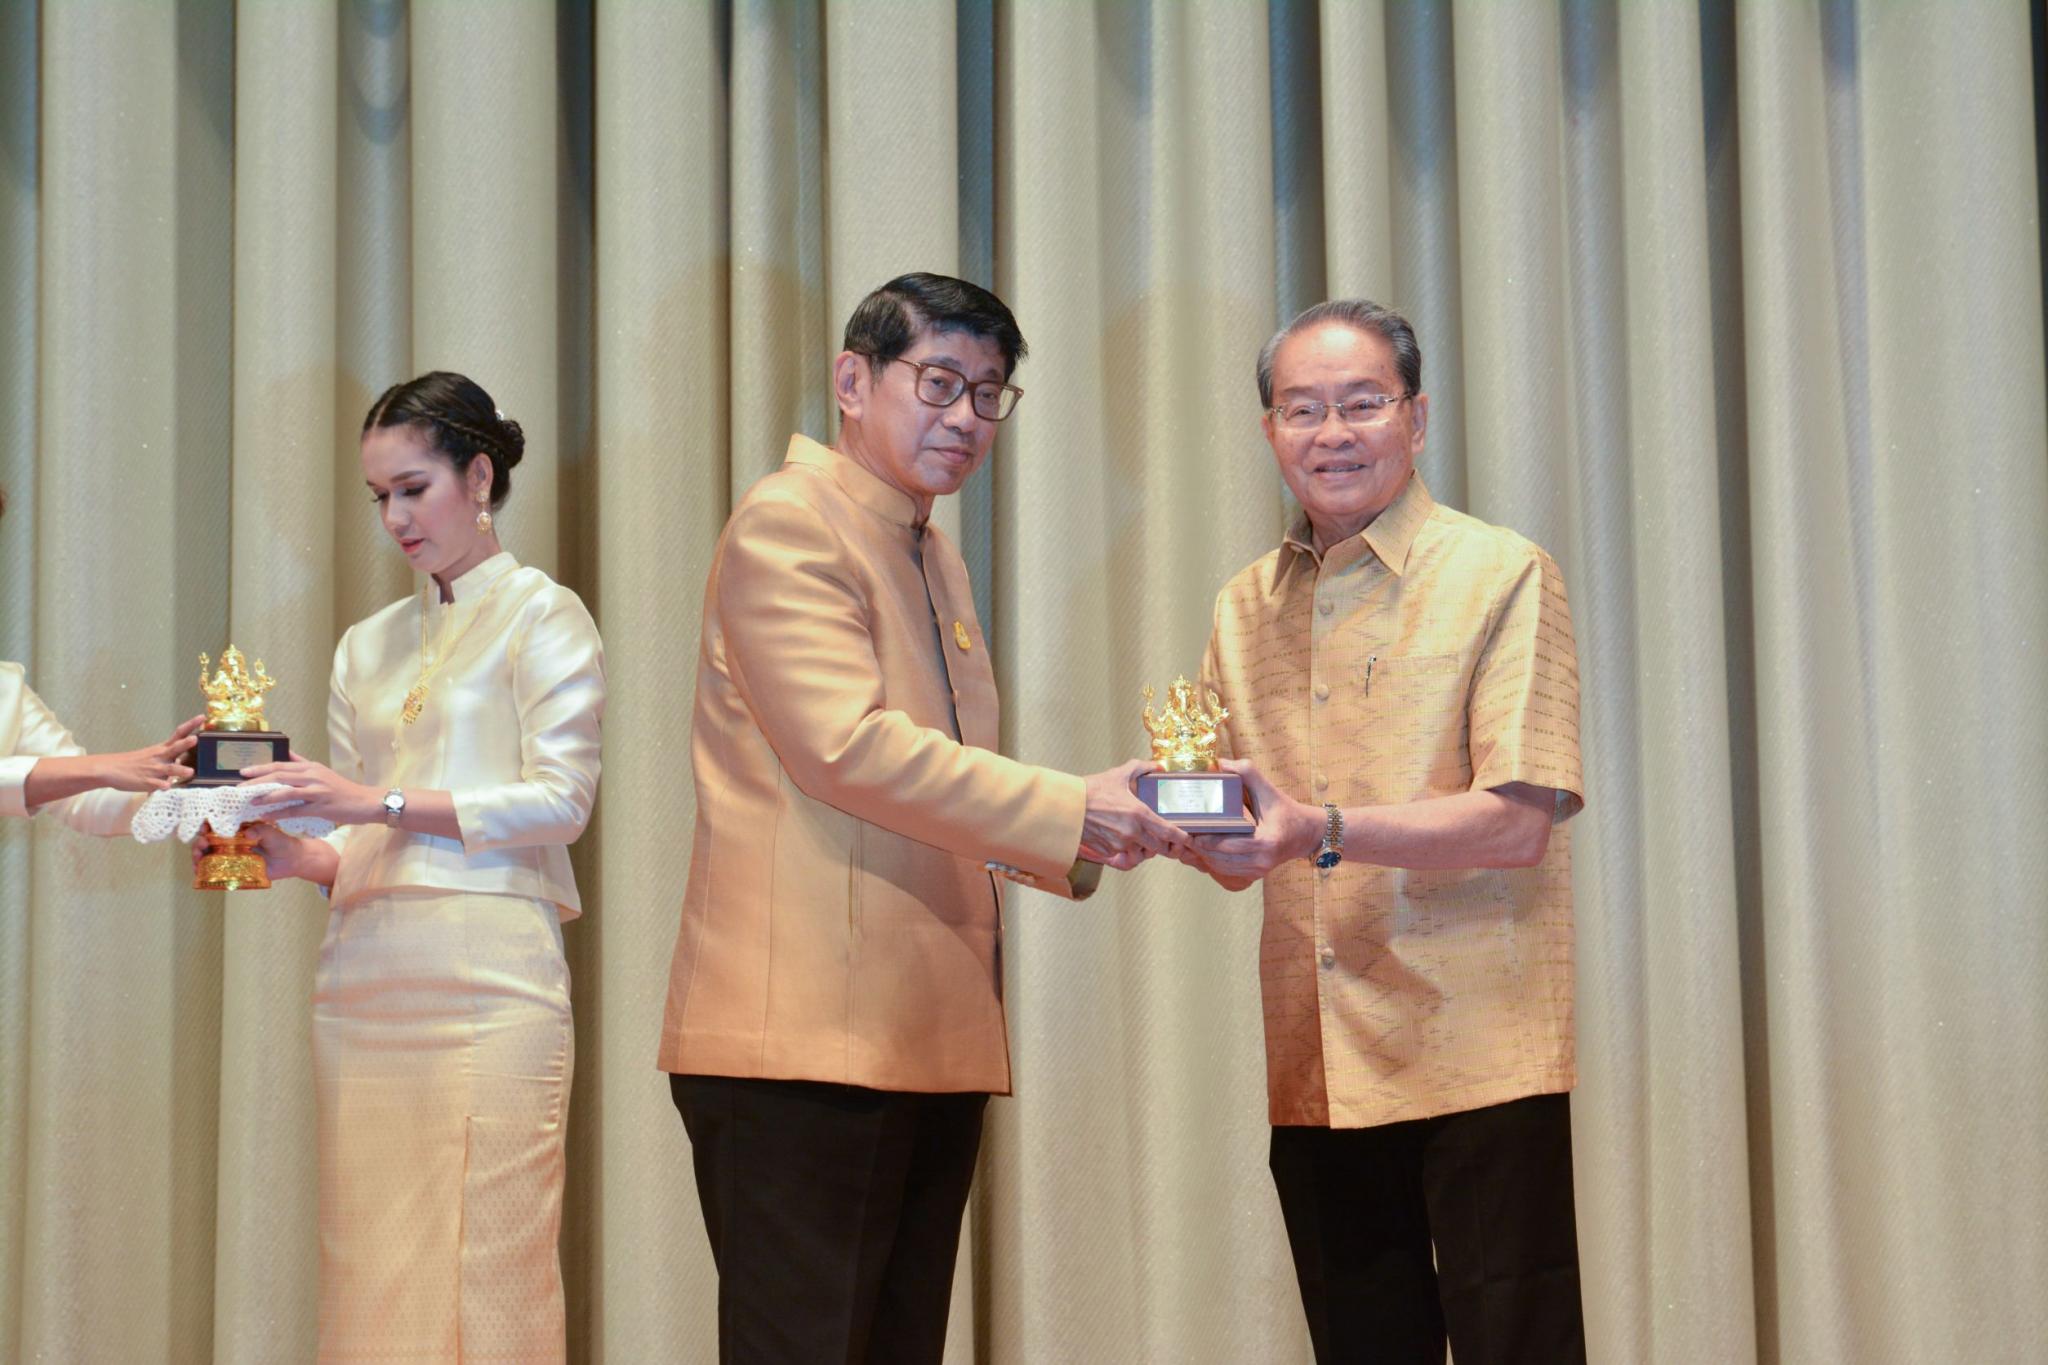 ศาสตราจารย์เกียรติคุณนายแพทย์วราวุธ สุมาวงศ์ รับรางวัลการใช้ภาษาไทยดีเด่น